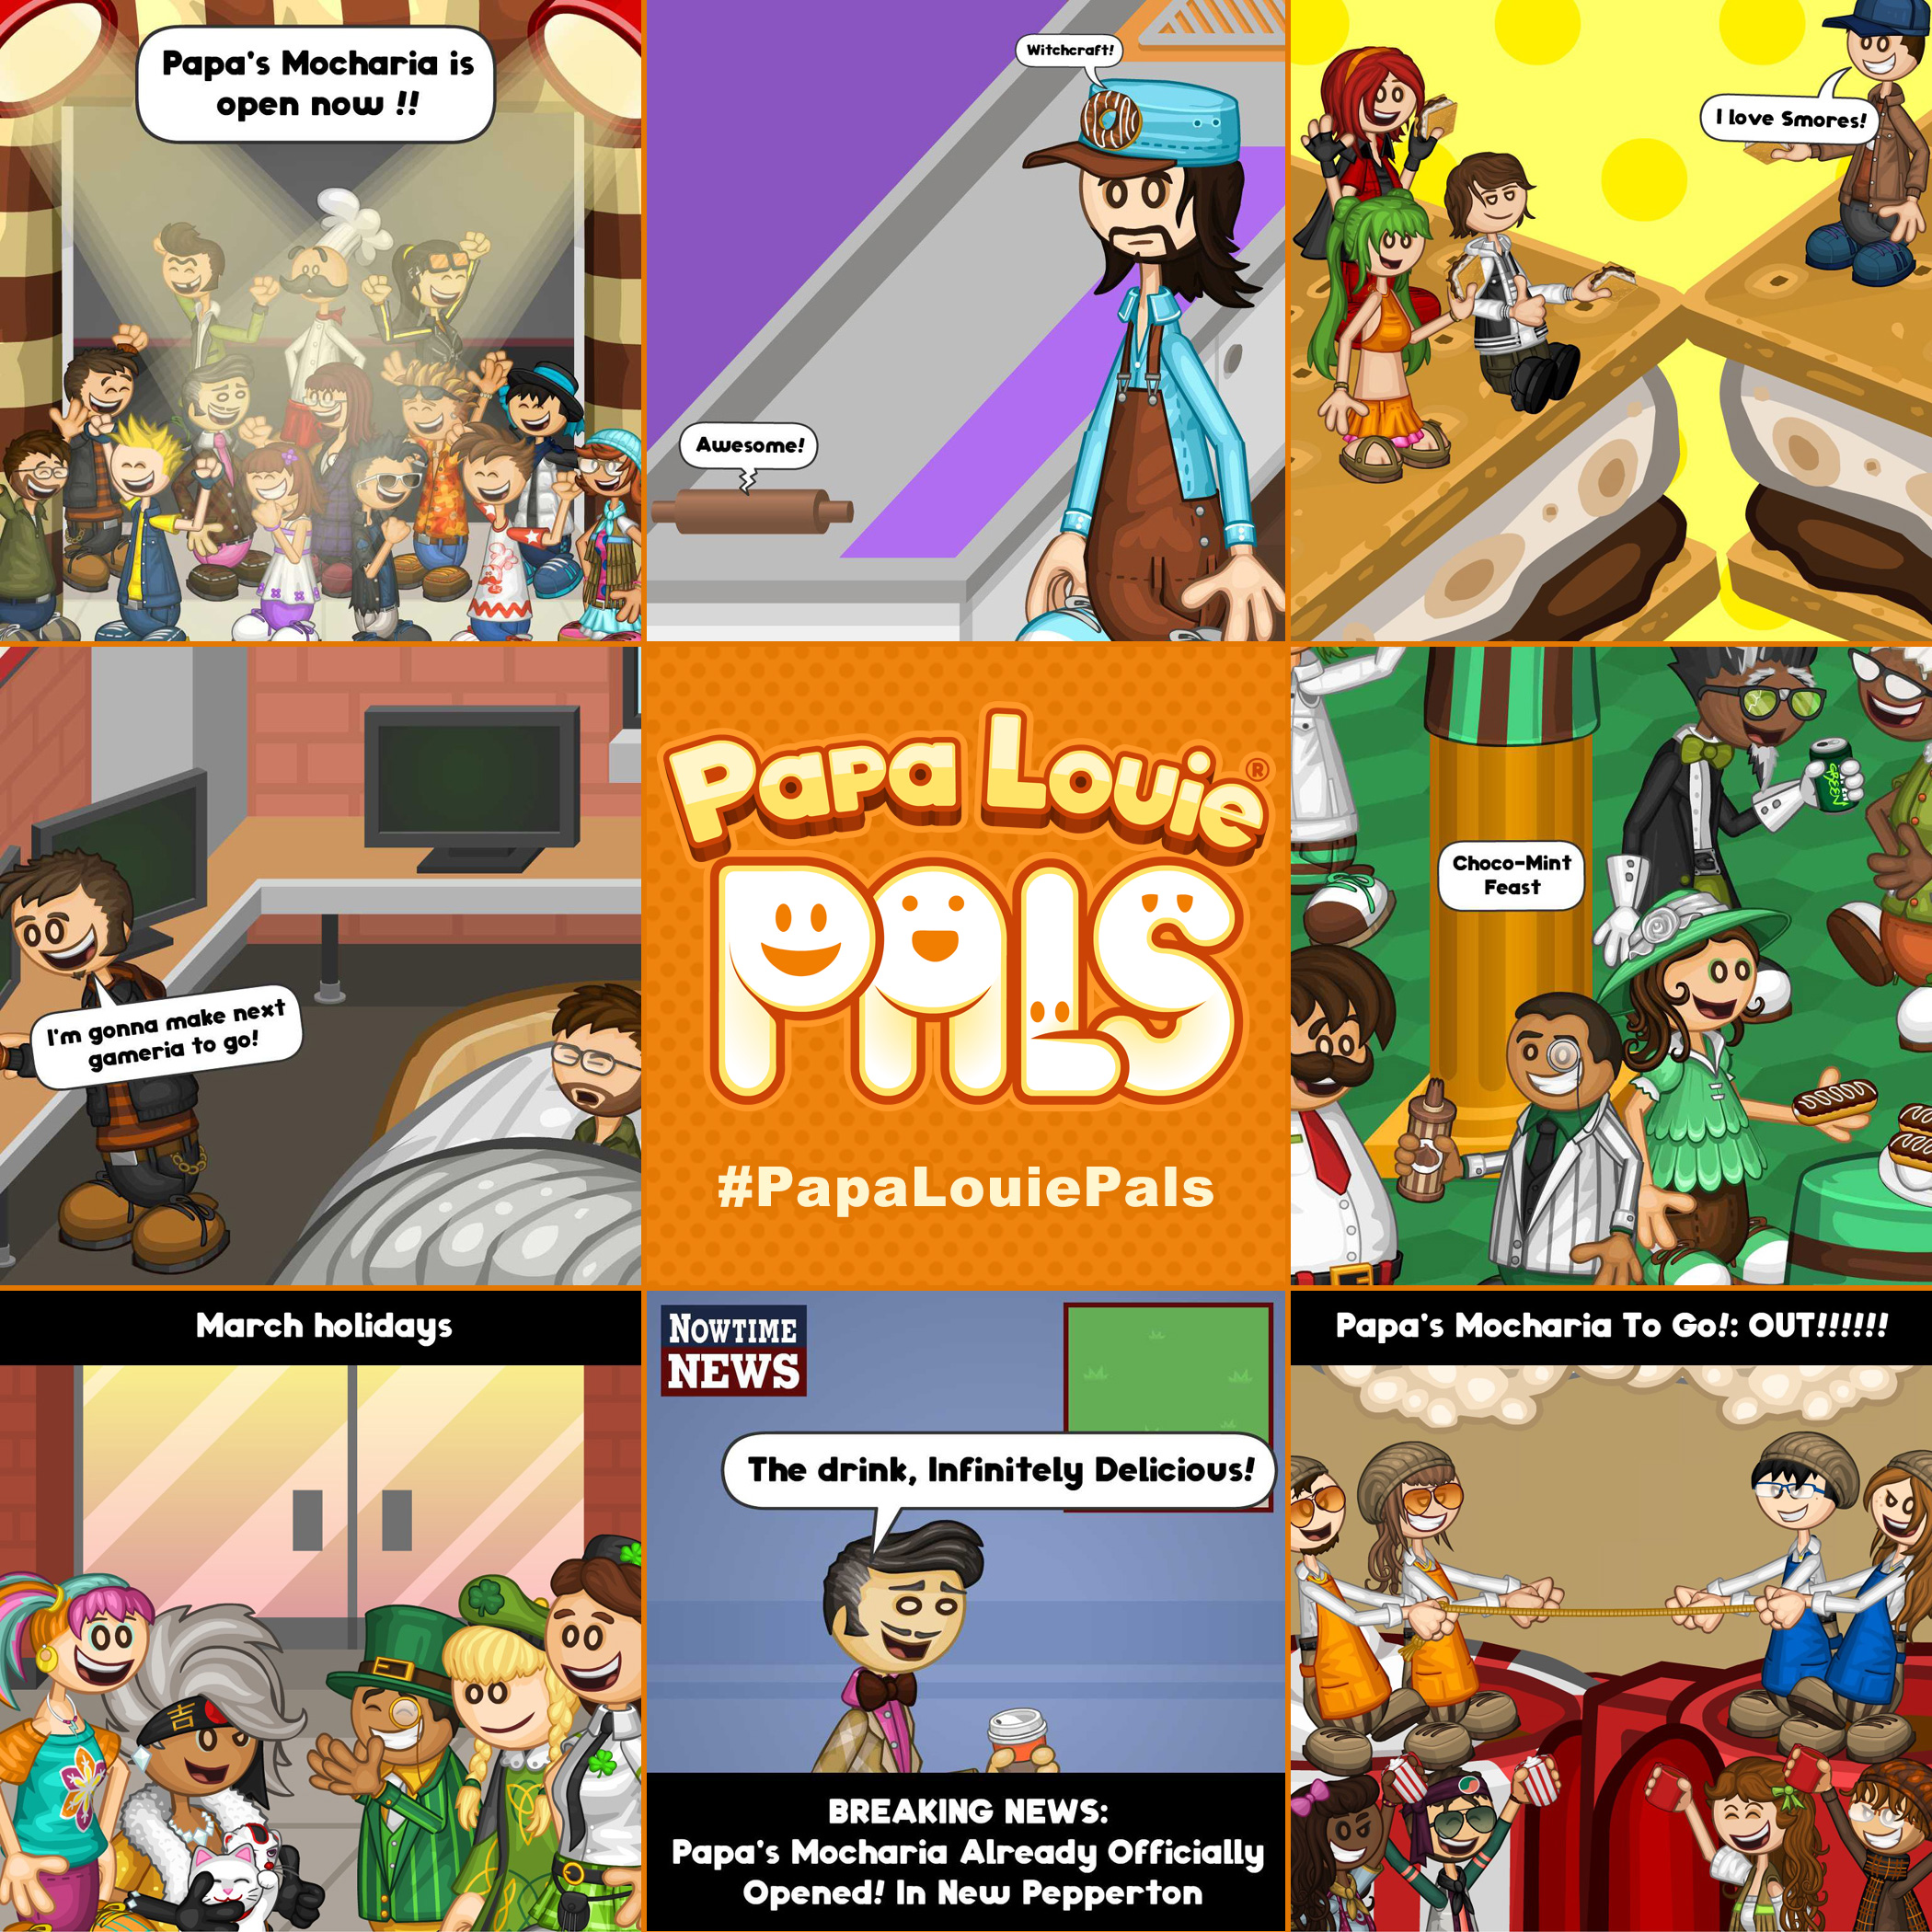 Next Week: Papa Louie 2! « Preview « Flipline Studios Blog